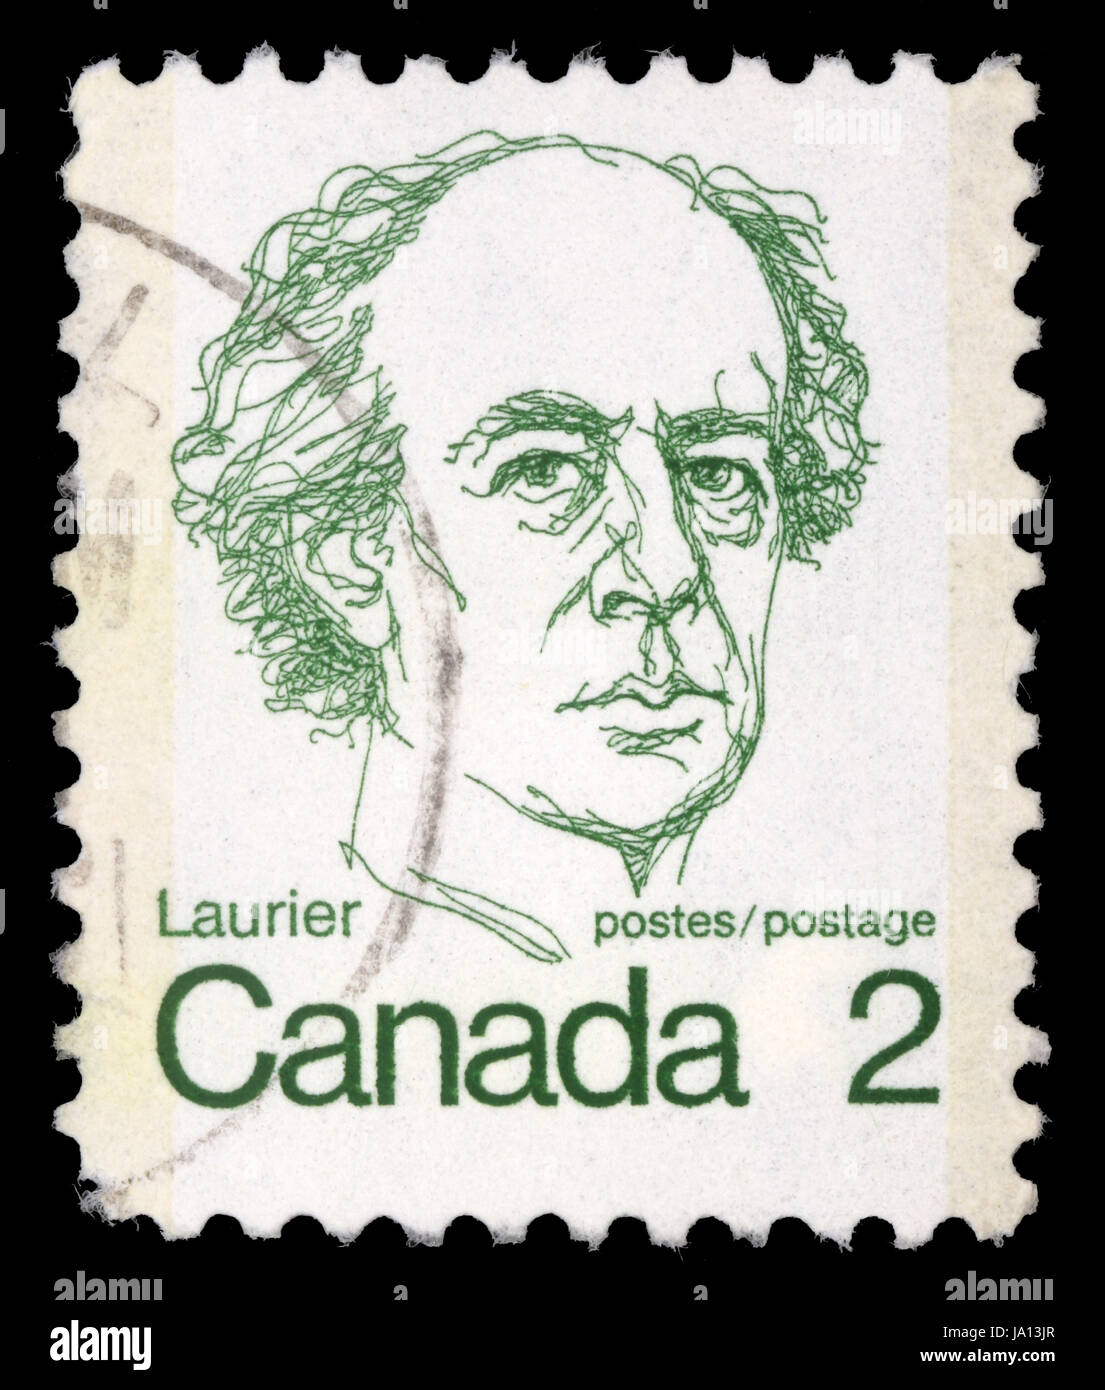 CANADA - VERS 1972 : timbre imprimé au Canada montre un portrait du premier ministre Sir Wilfrid Laurier, vers 1972. Banque D'Images